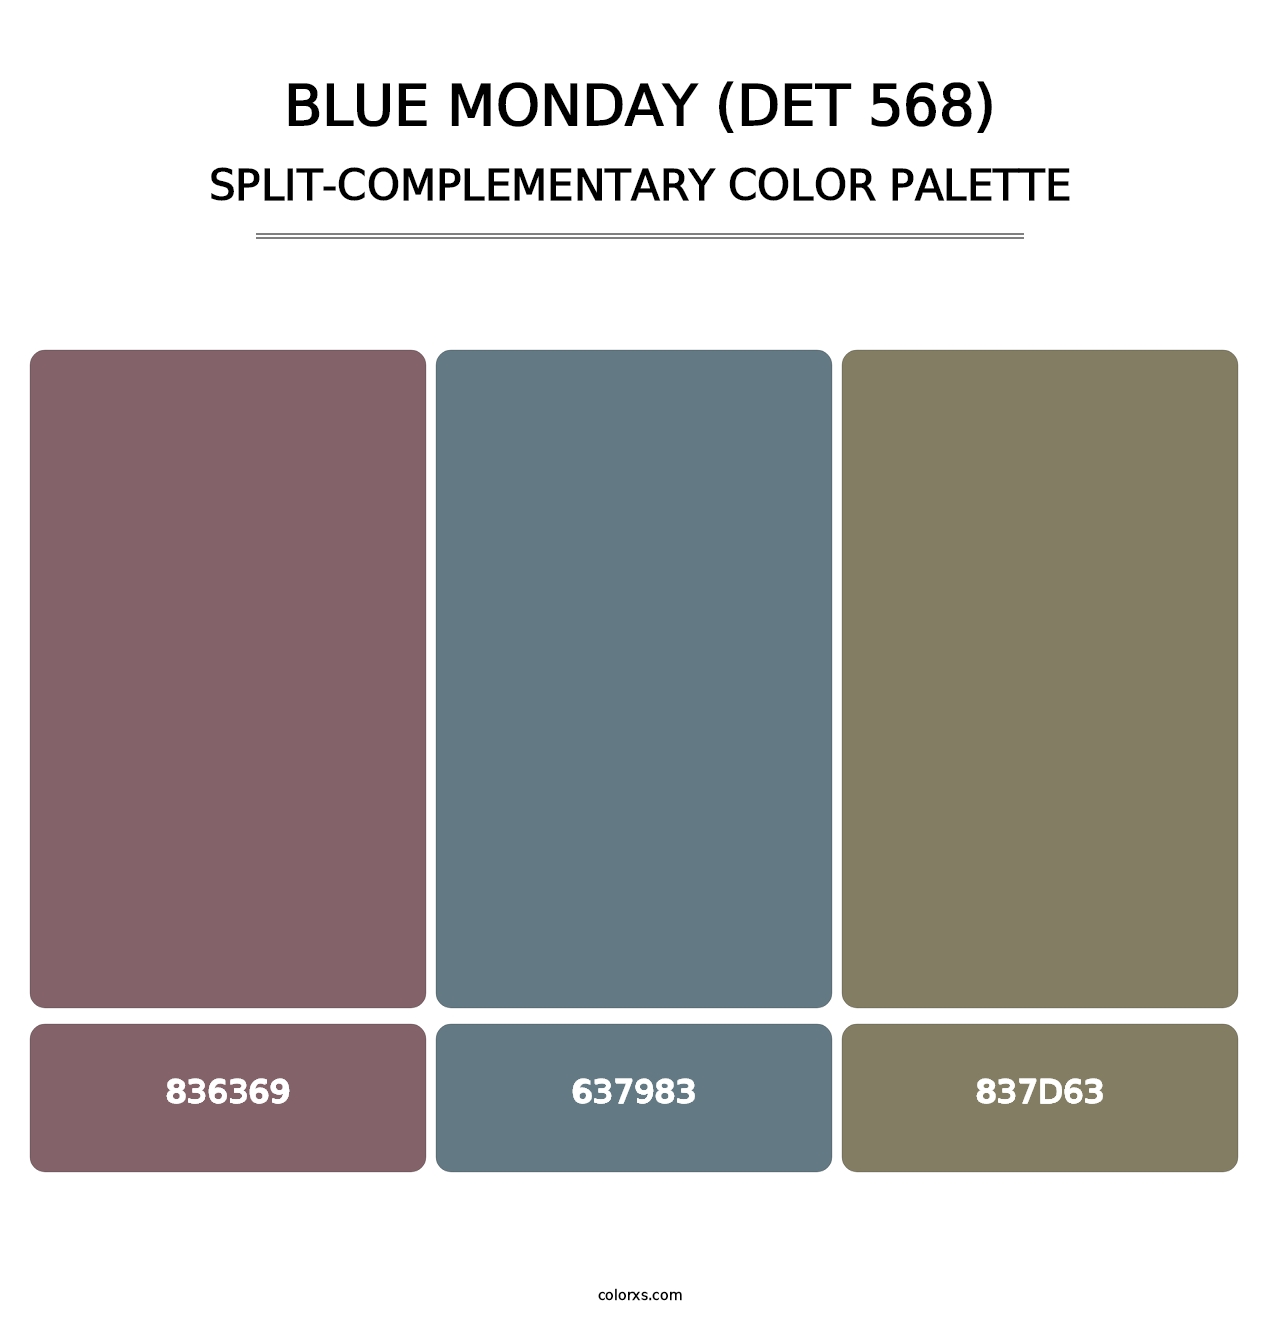 Blue Monday (DET 568) - Split-Complementary Color Palette